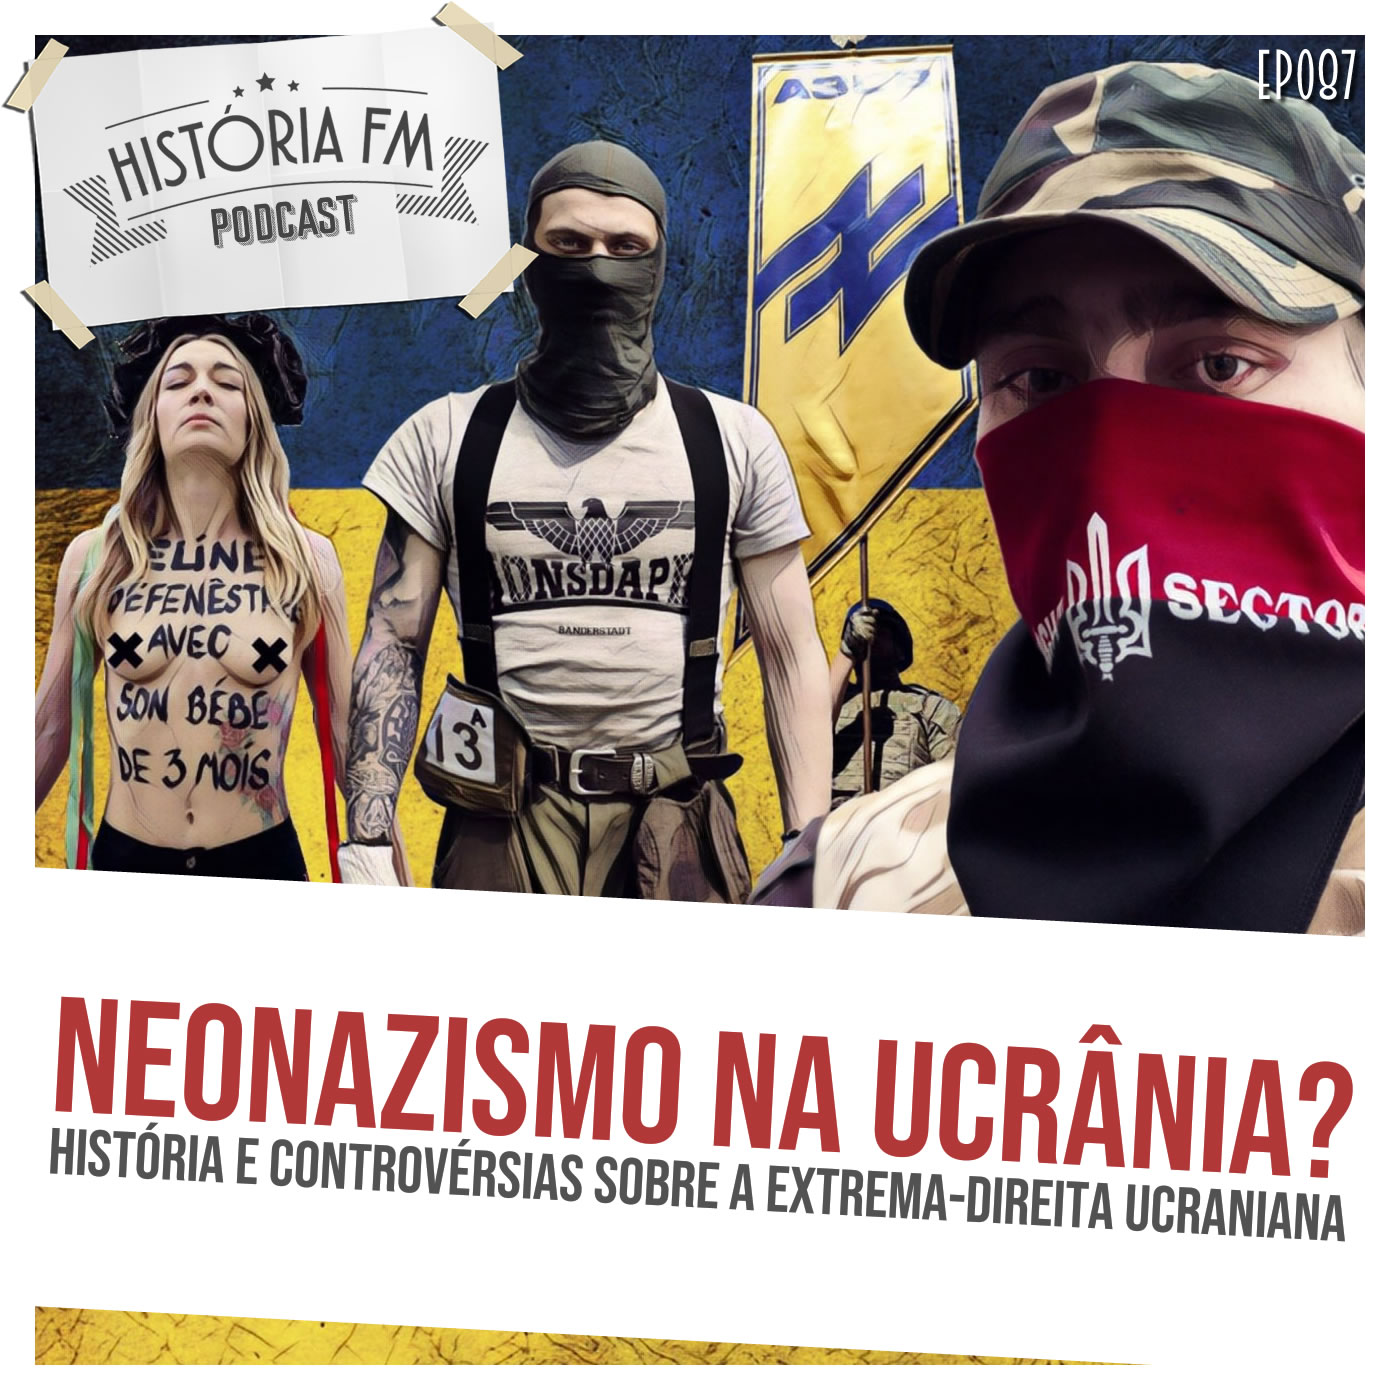 Neonazismo na Ucrânia? História e controvérsias sobre a extrema-direita ucraniana